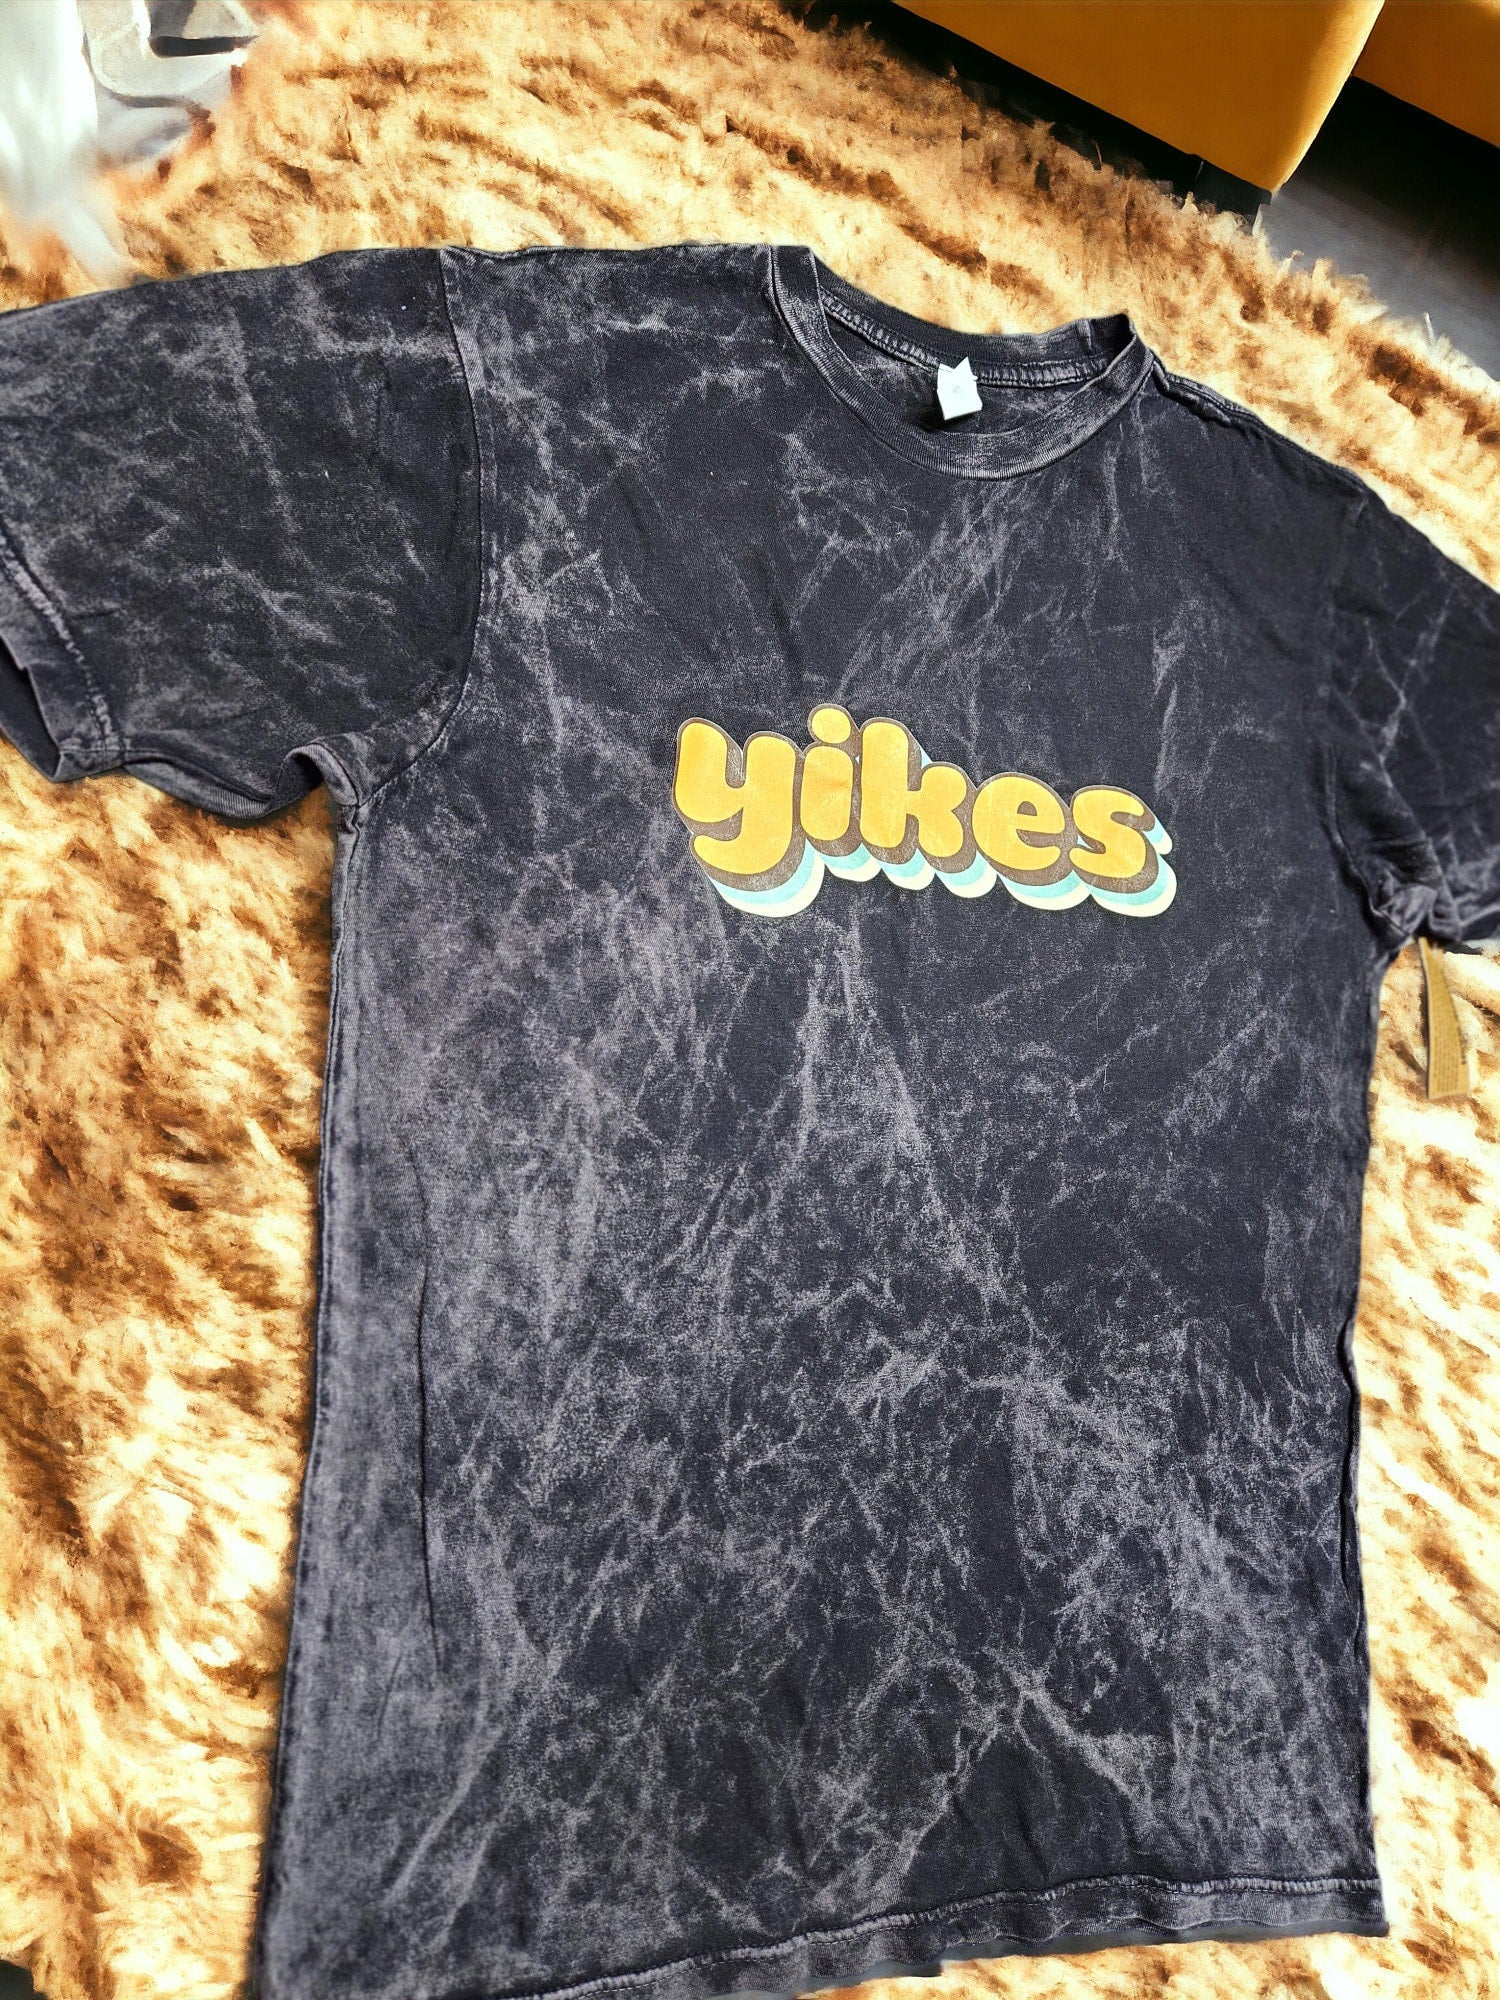 1970s Yikes T-Shirt - Cloud Black, Tie Dye, Vintage, Retro, Sarcastic, Unisex